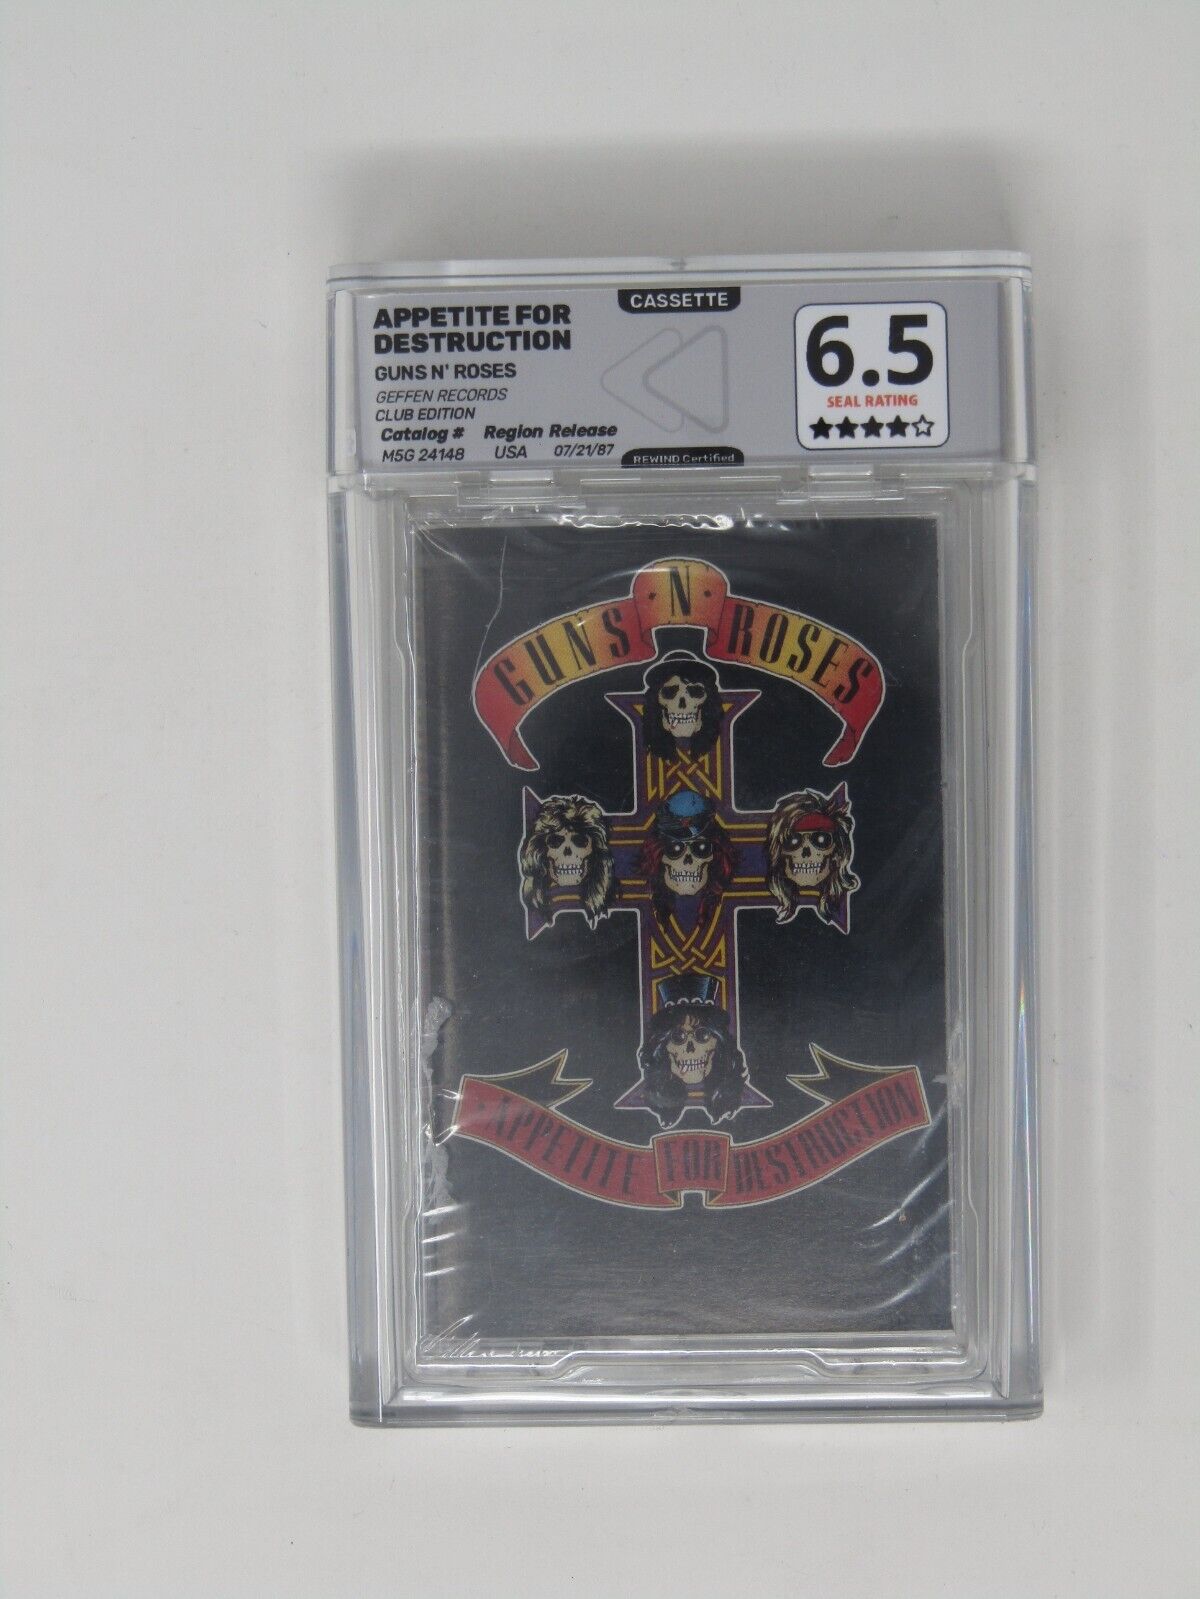 Guns N Roses-Appetite for Destruction Graded 6.5-4/5 Cassette Tape Sealed REWIND